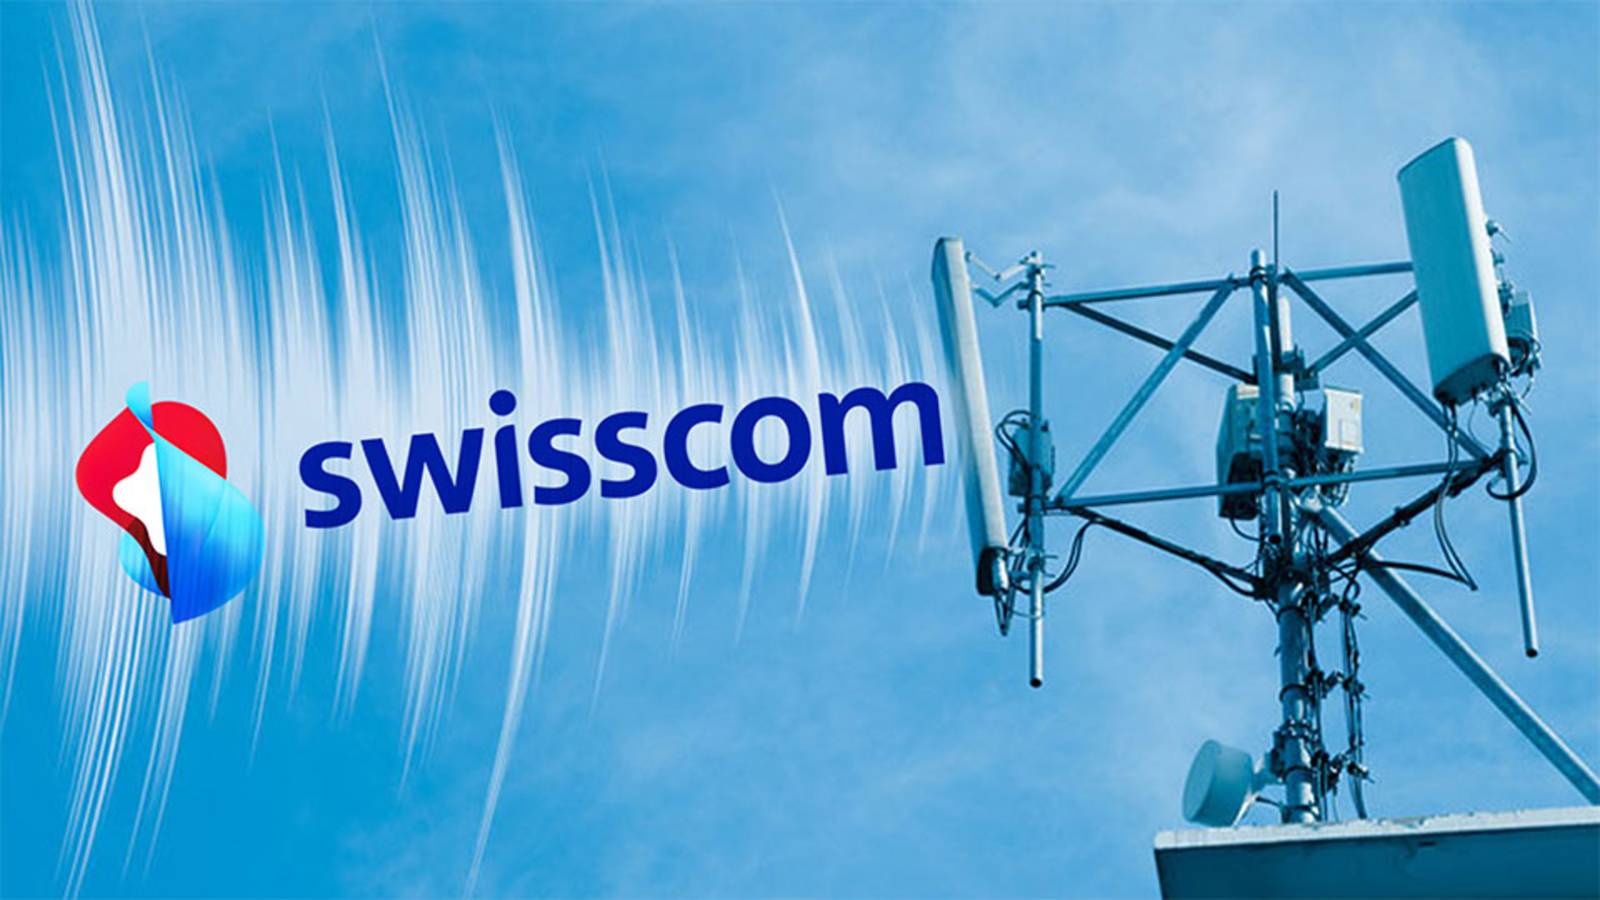 L'entrata di Swisscom nell'arena apre nuove prospettive per la competizione e il consolidamento nel settore delle telecomunicazioni.